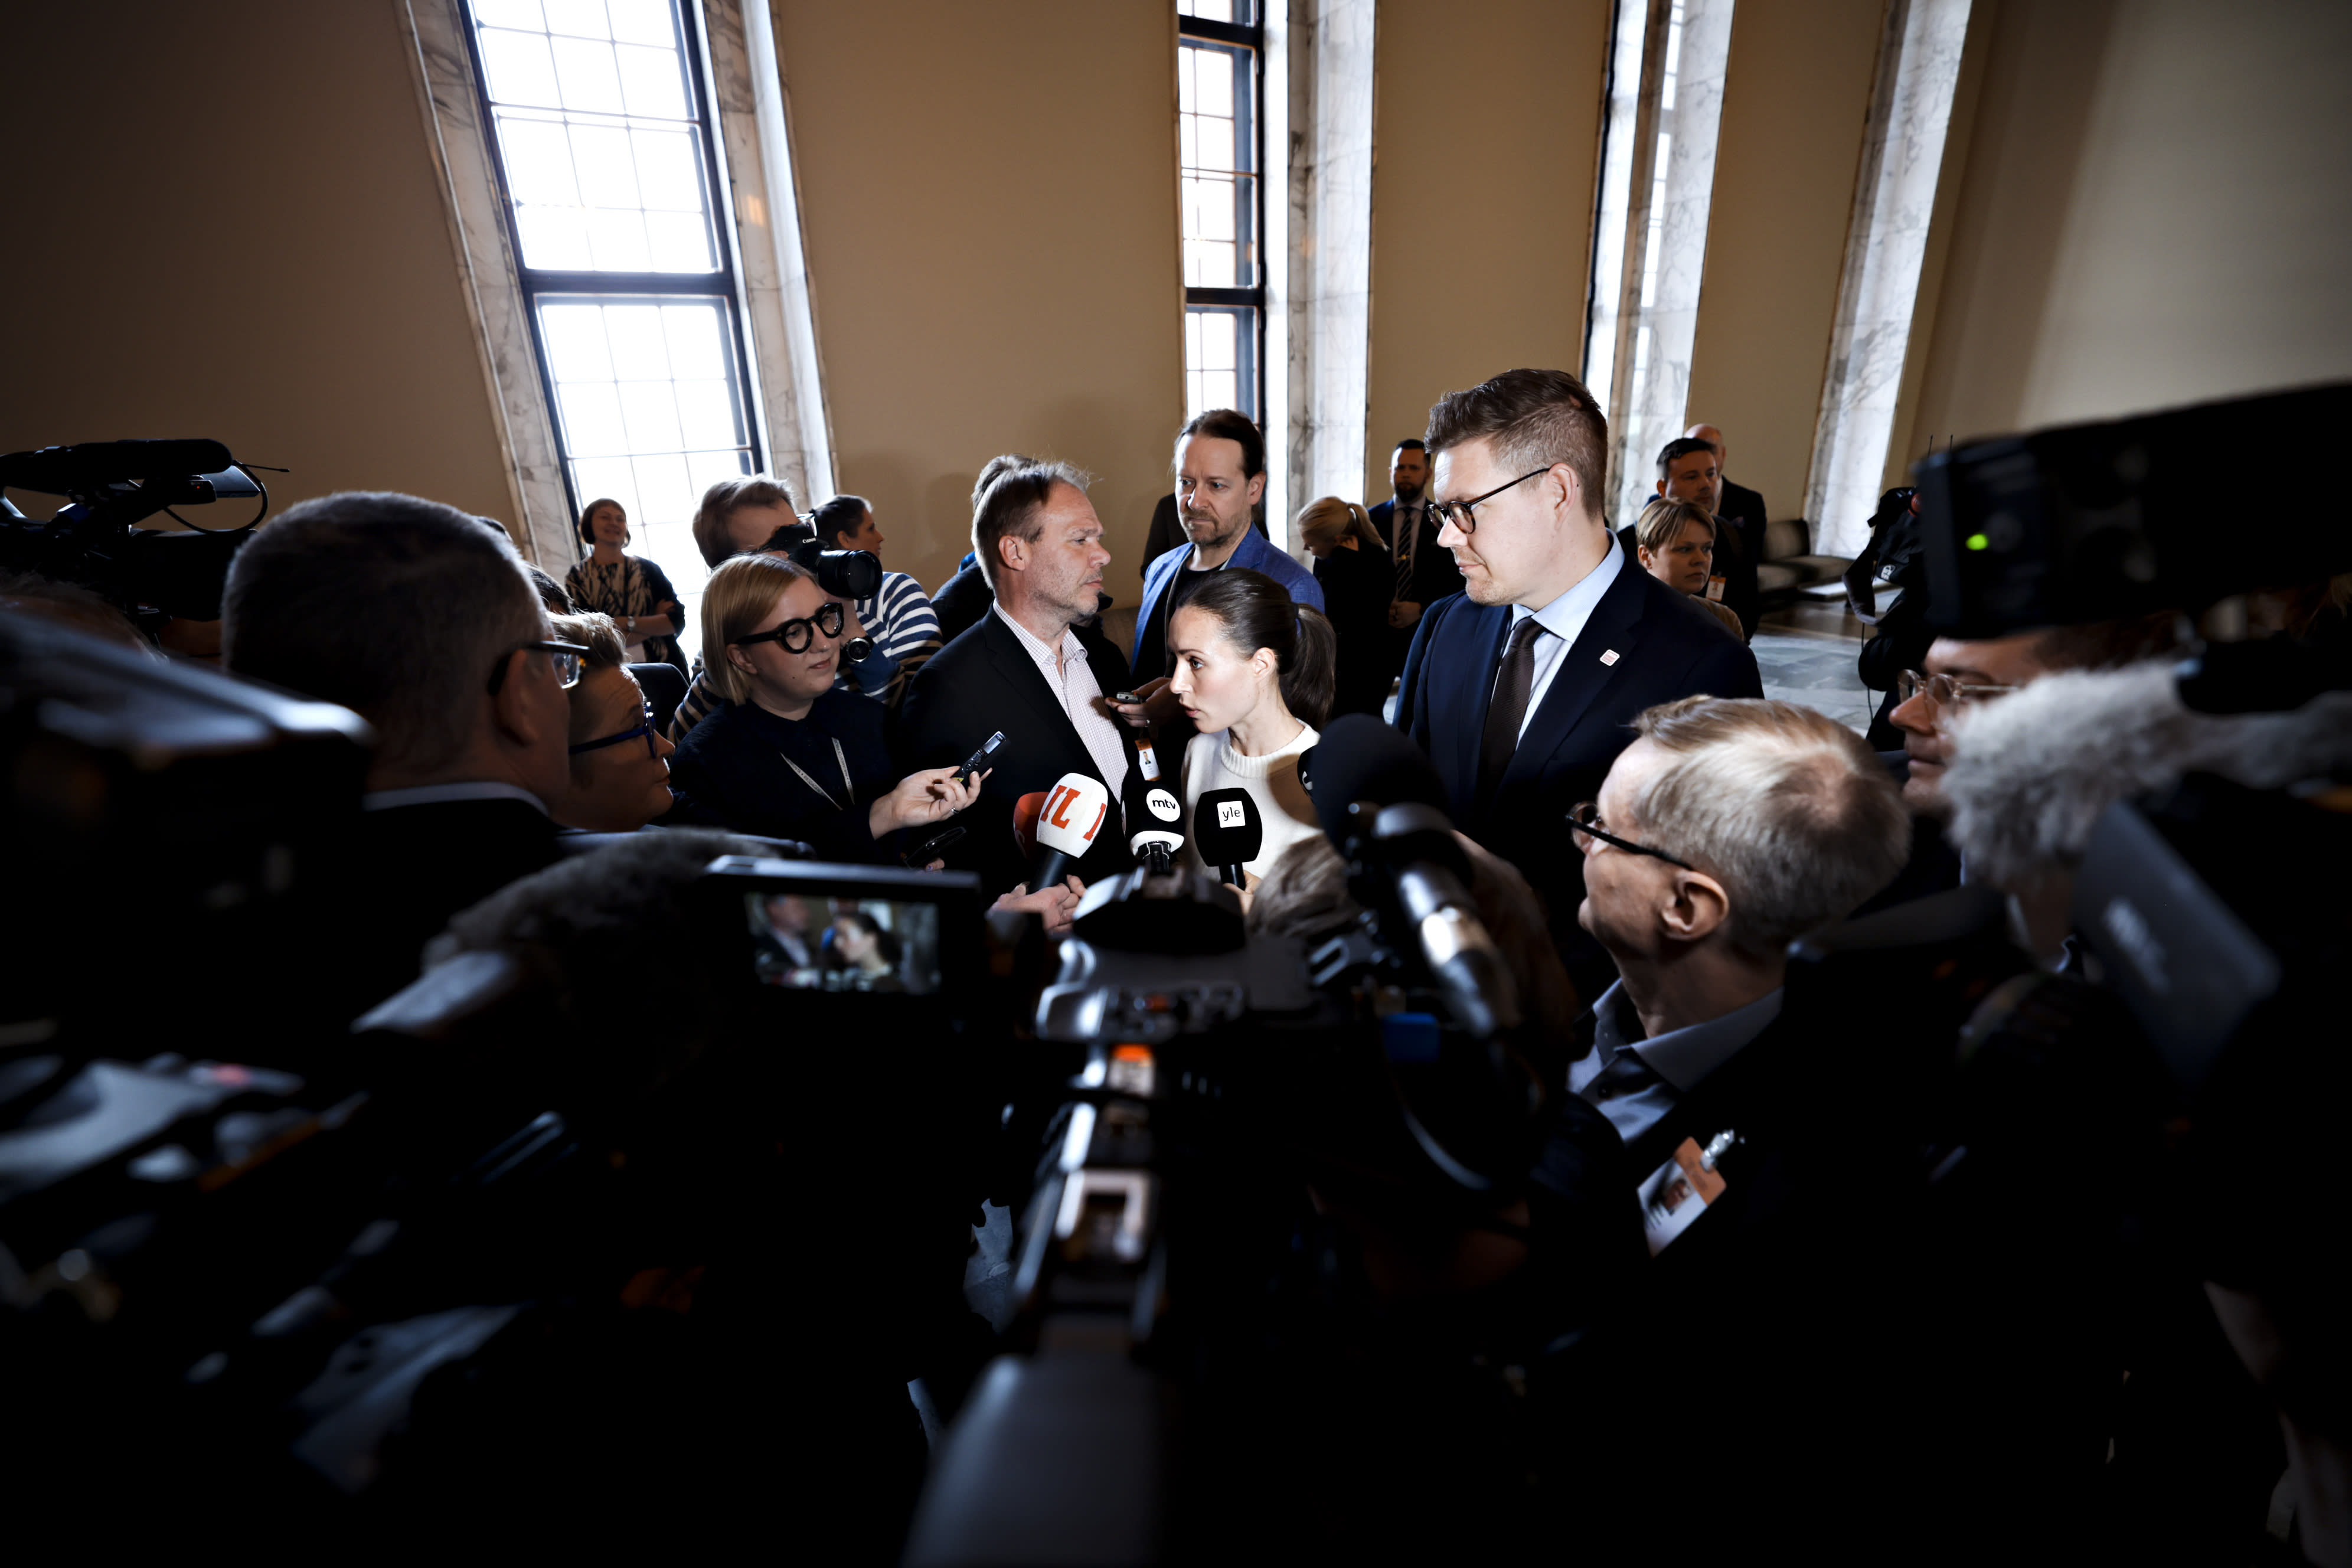 Sanna Marin macht sich Sorgen um Finnland „in der verwundbarsten Position“, während sich die rechten Parteien auf Koalitionsgespräche vorbereiten